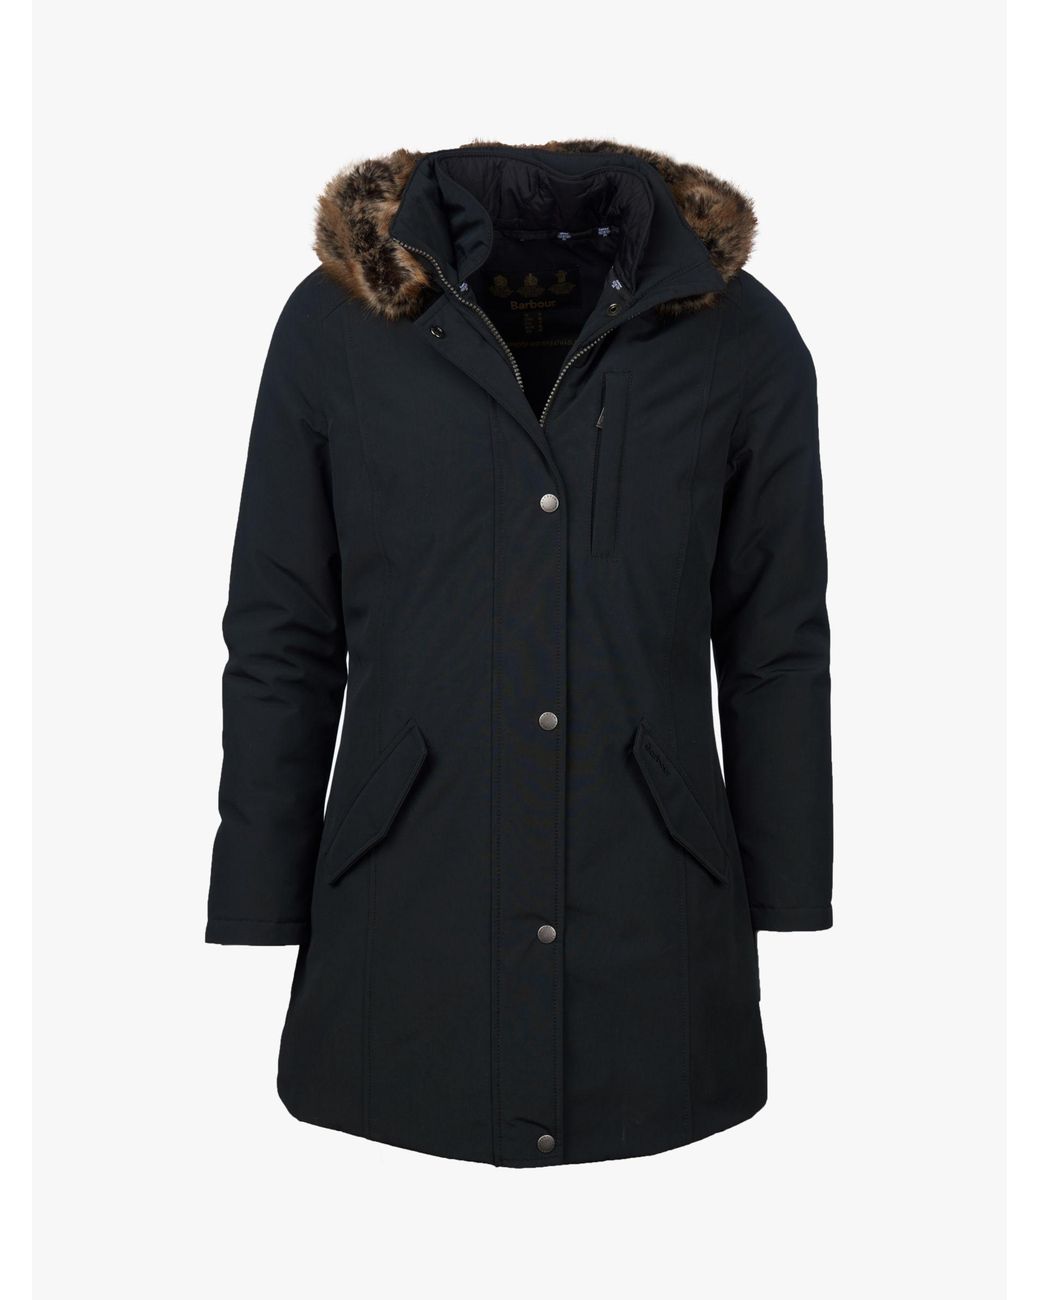 Barbour Maya Waterproof Hooded Jacket in Black | Lyst UK